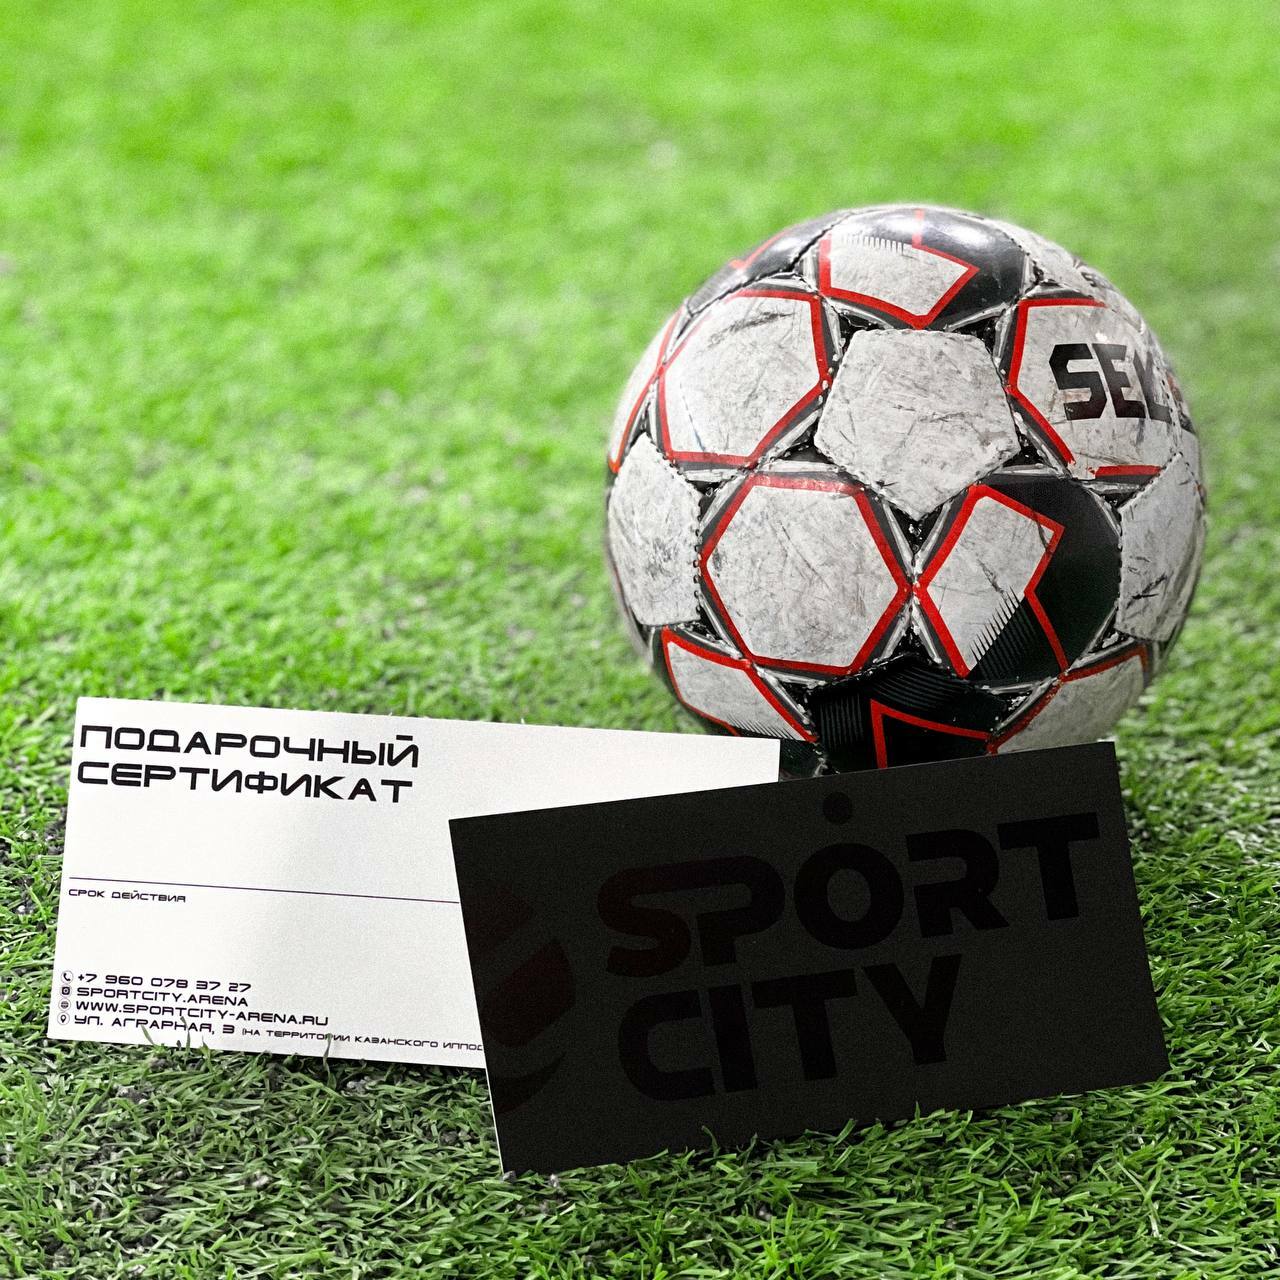 Подарочный сертификат в футбольном манеже SPORT CITY